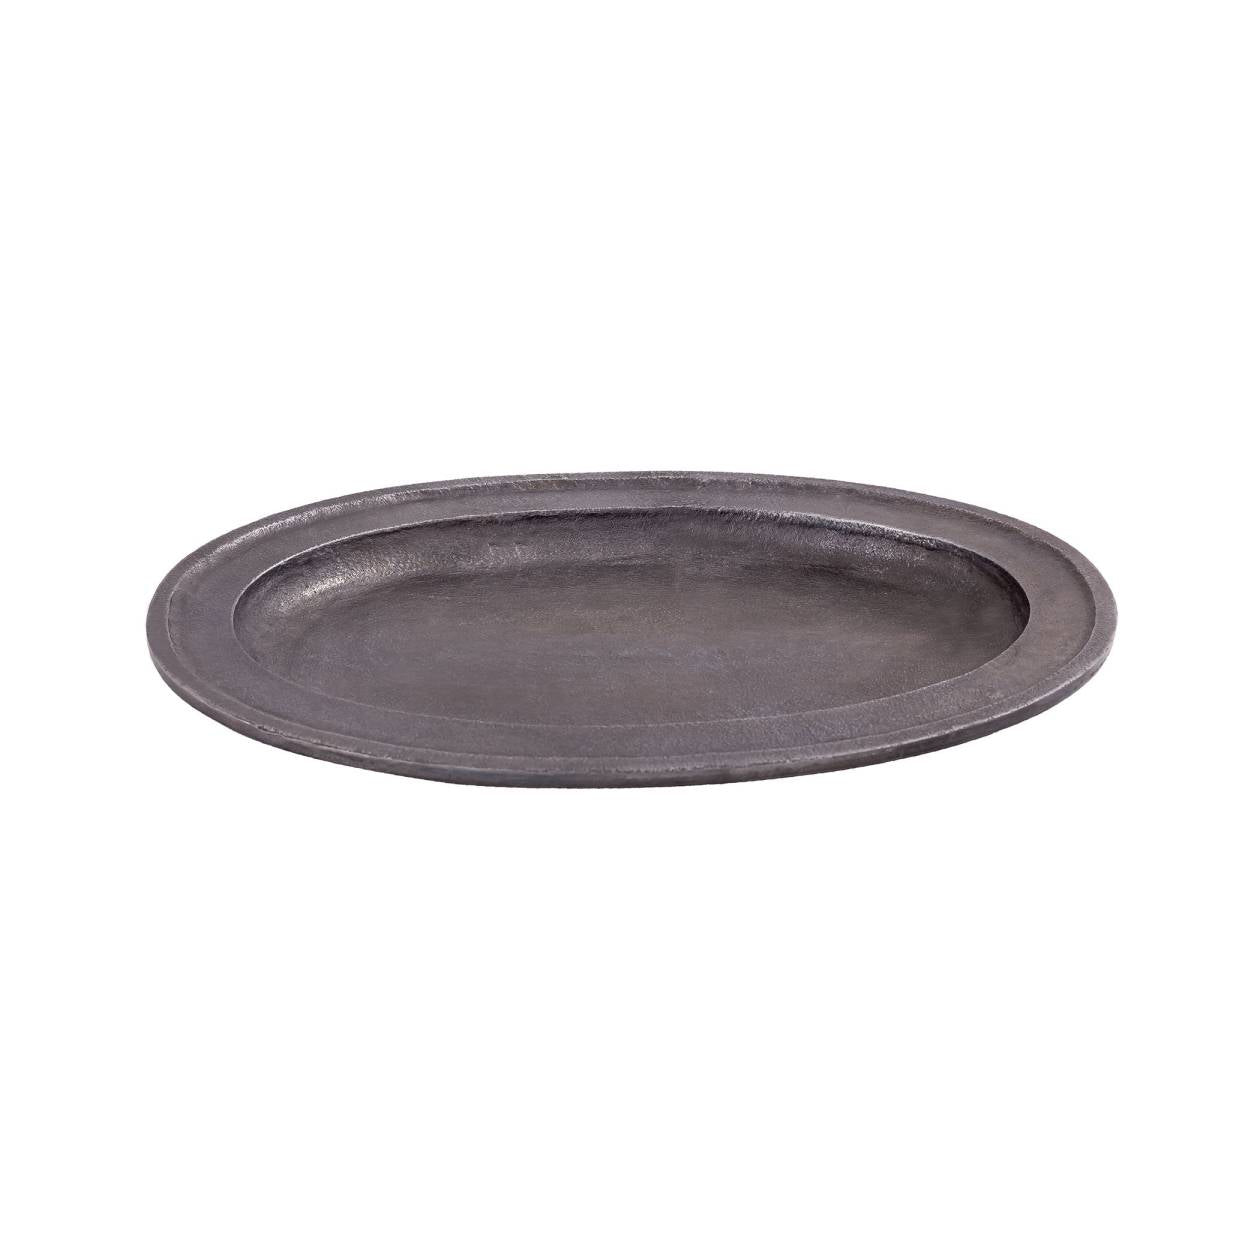 Aluminum Round Tray without Handles ELK Lifestyle | Trays | Modishstore